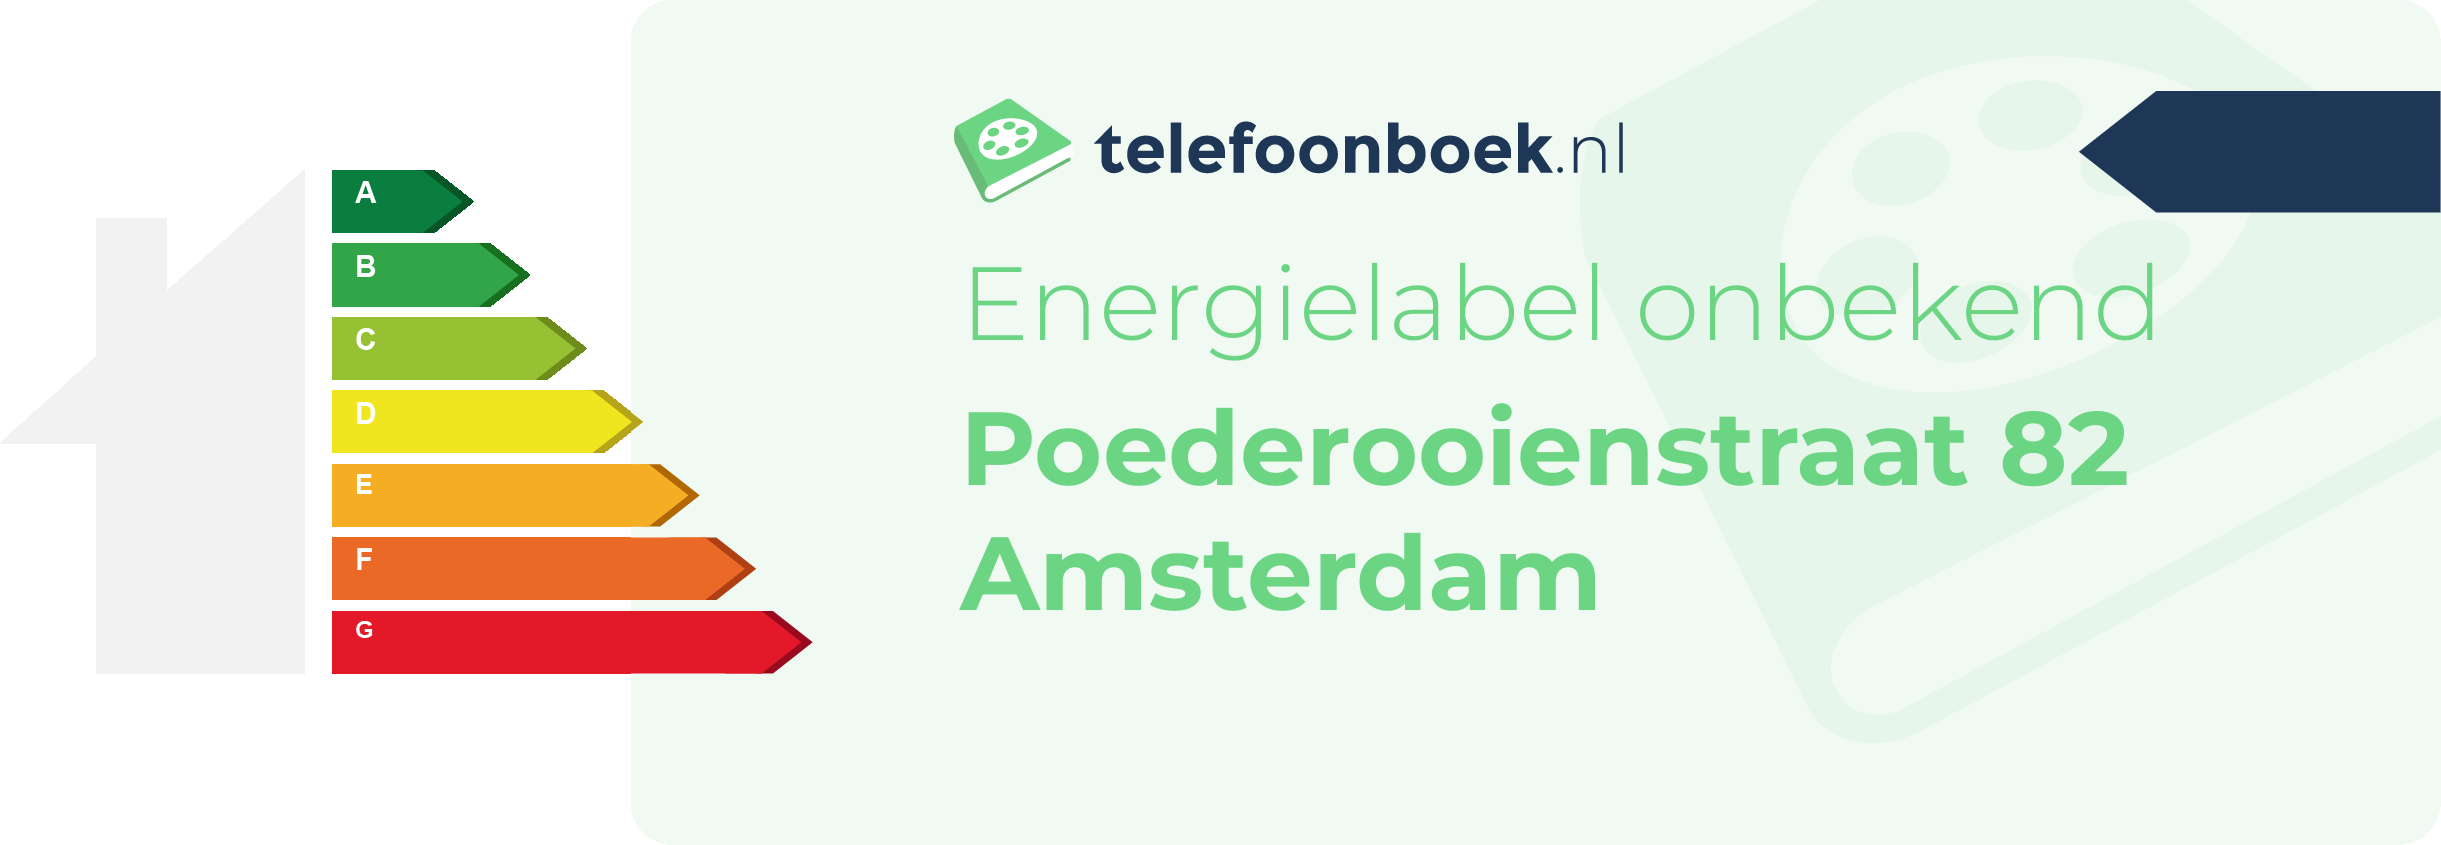 Energielabel Poederooienstraat 82 Amsterdam